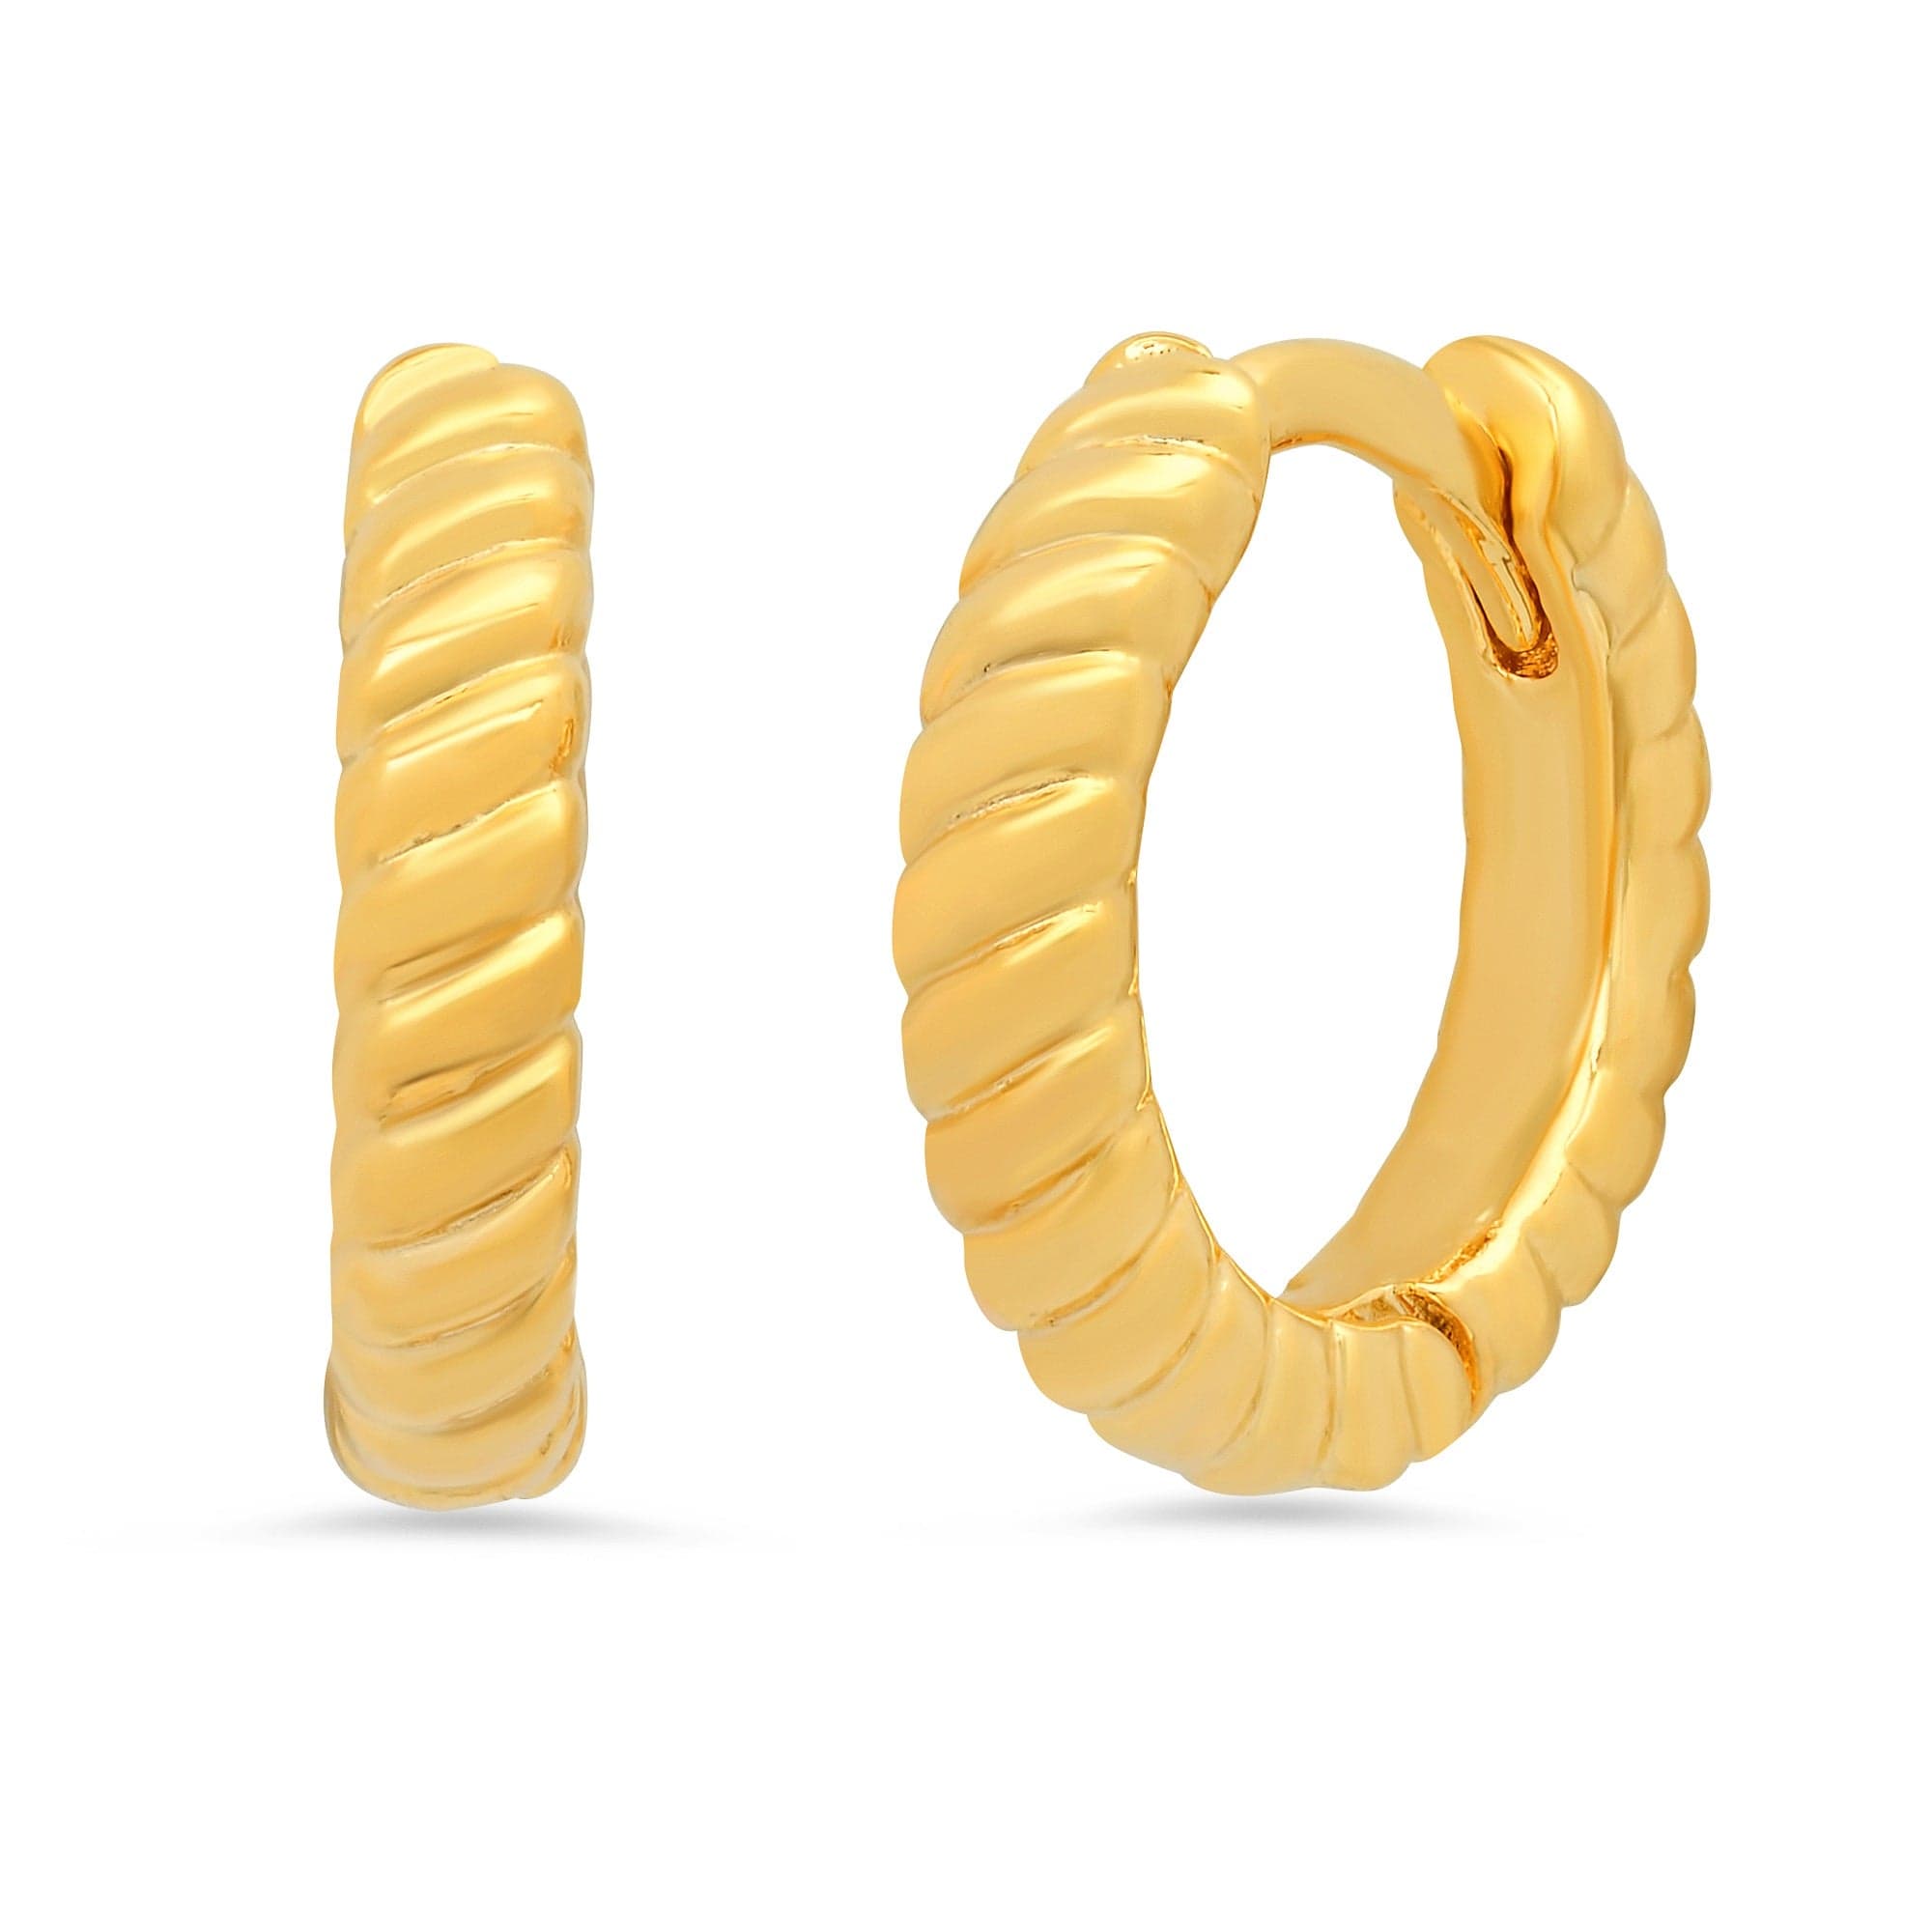 TAI JEWELRY Earrings Twisted Gold Huggies